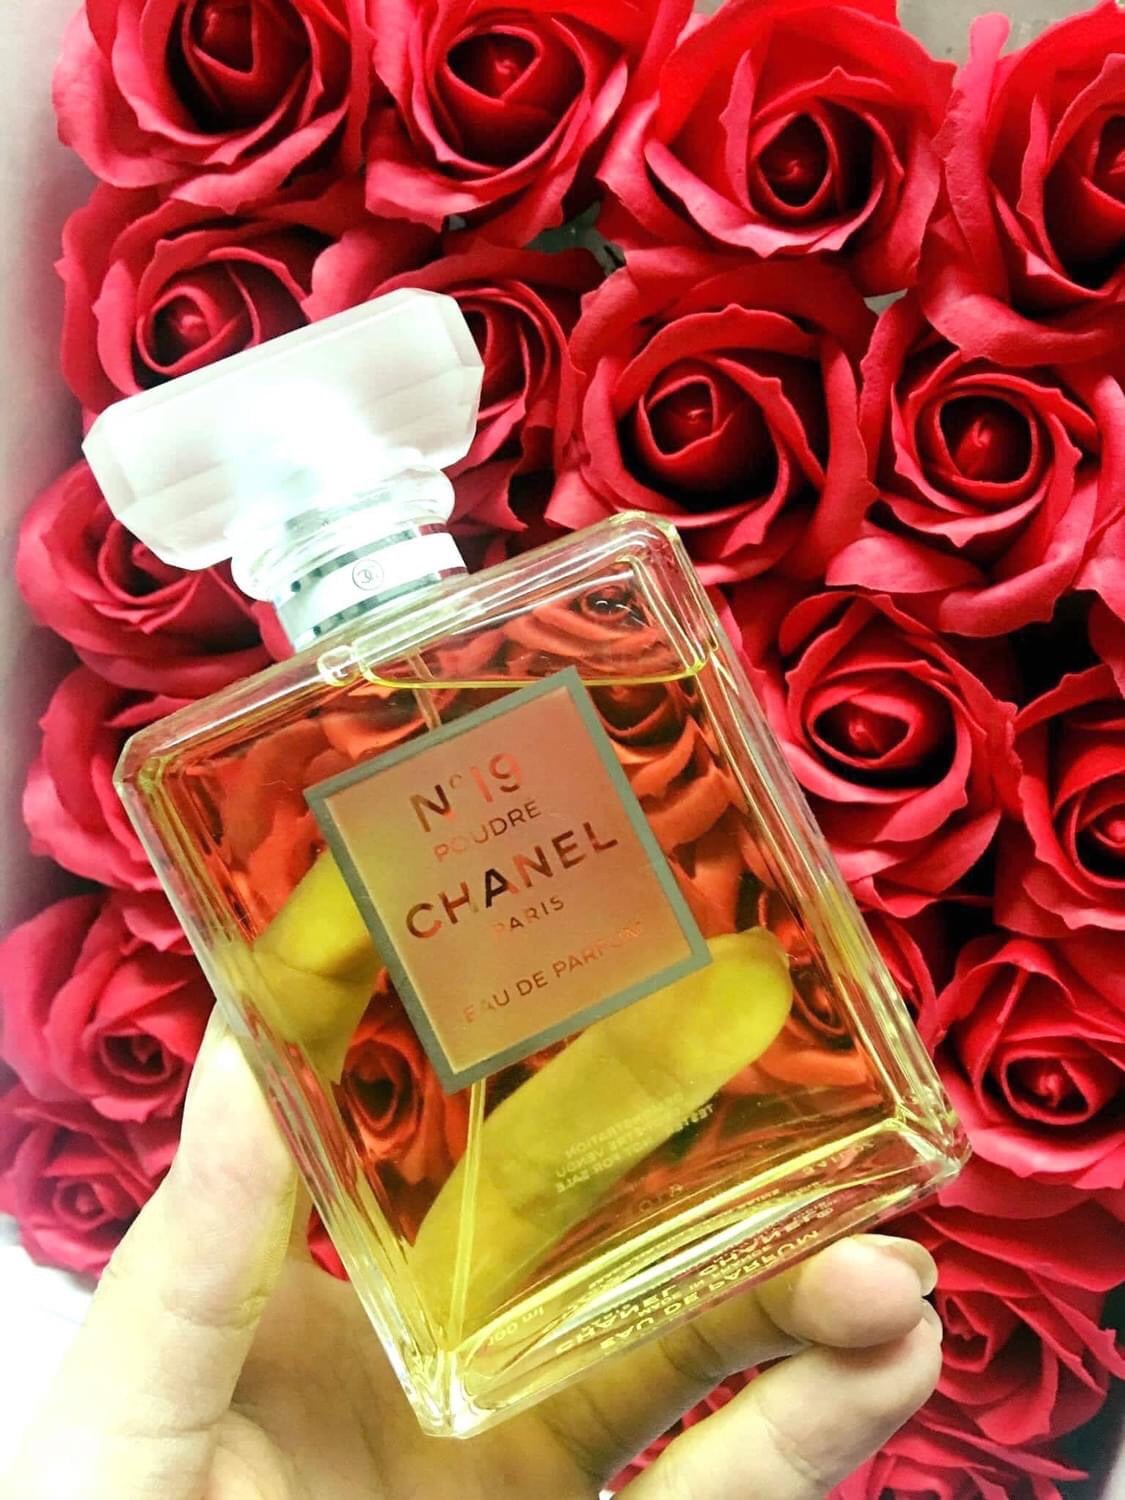 Chanel No.19 Poudre 5 - Nuochoarosa.com - Nước hoa cao cấp, chính hãng giá tốt, mẫu mới